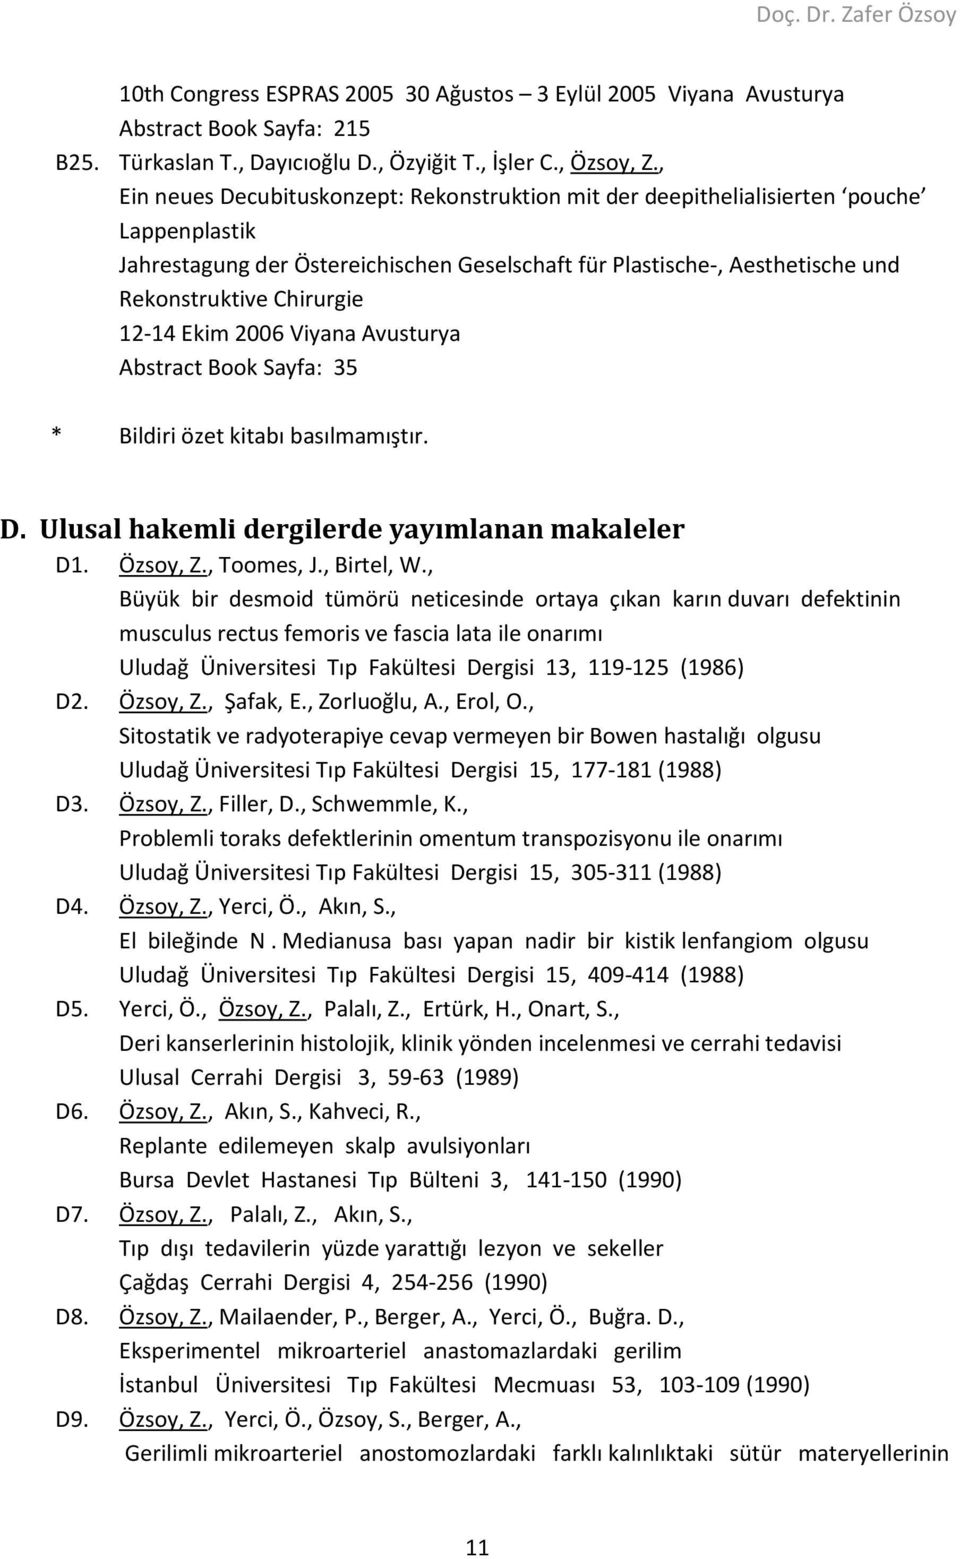 12-14 Ekim 2006 Viyana Avusturya Abstract Book Sayfa: 35 * Bildiri özet kitabı basılmamıştır. D. Ulusal hakemli dergilerde yayımlanan makaleler D1. Özsoy, Z., Toomes, J., Birtel, W.